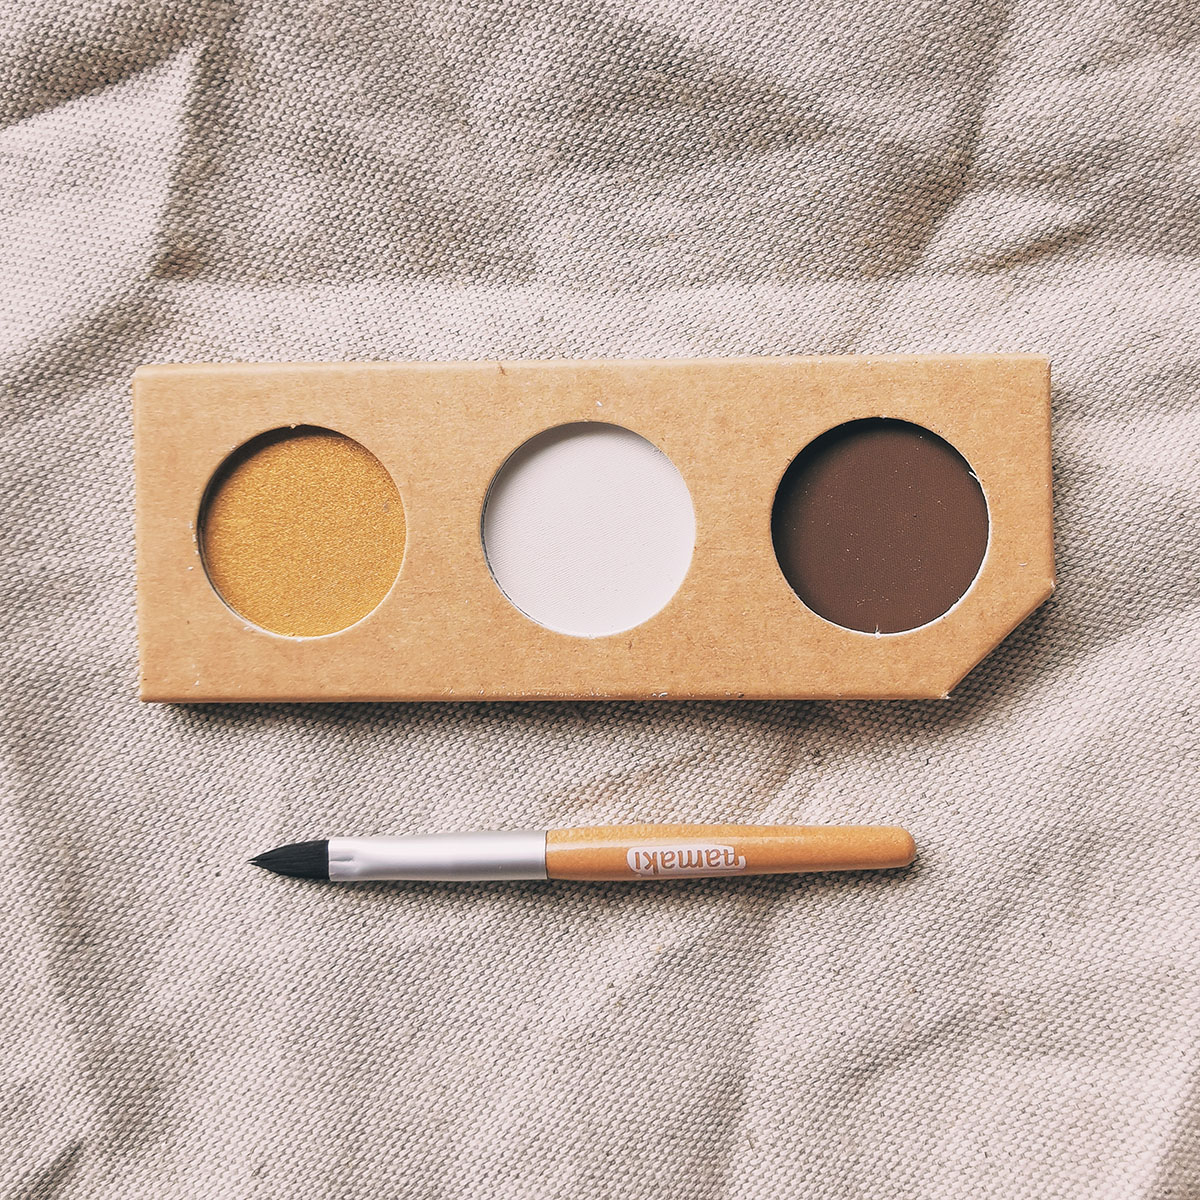 Kit de maquillage naturel 3 couleurs - Or, blanc et marron